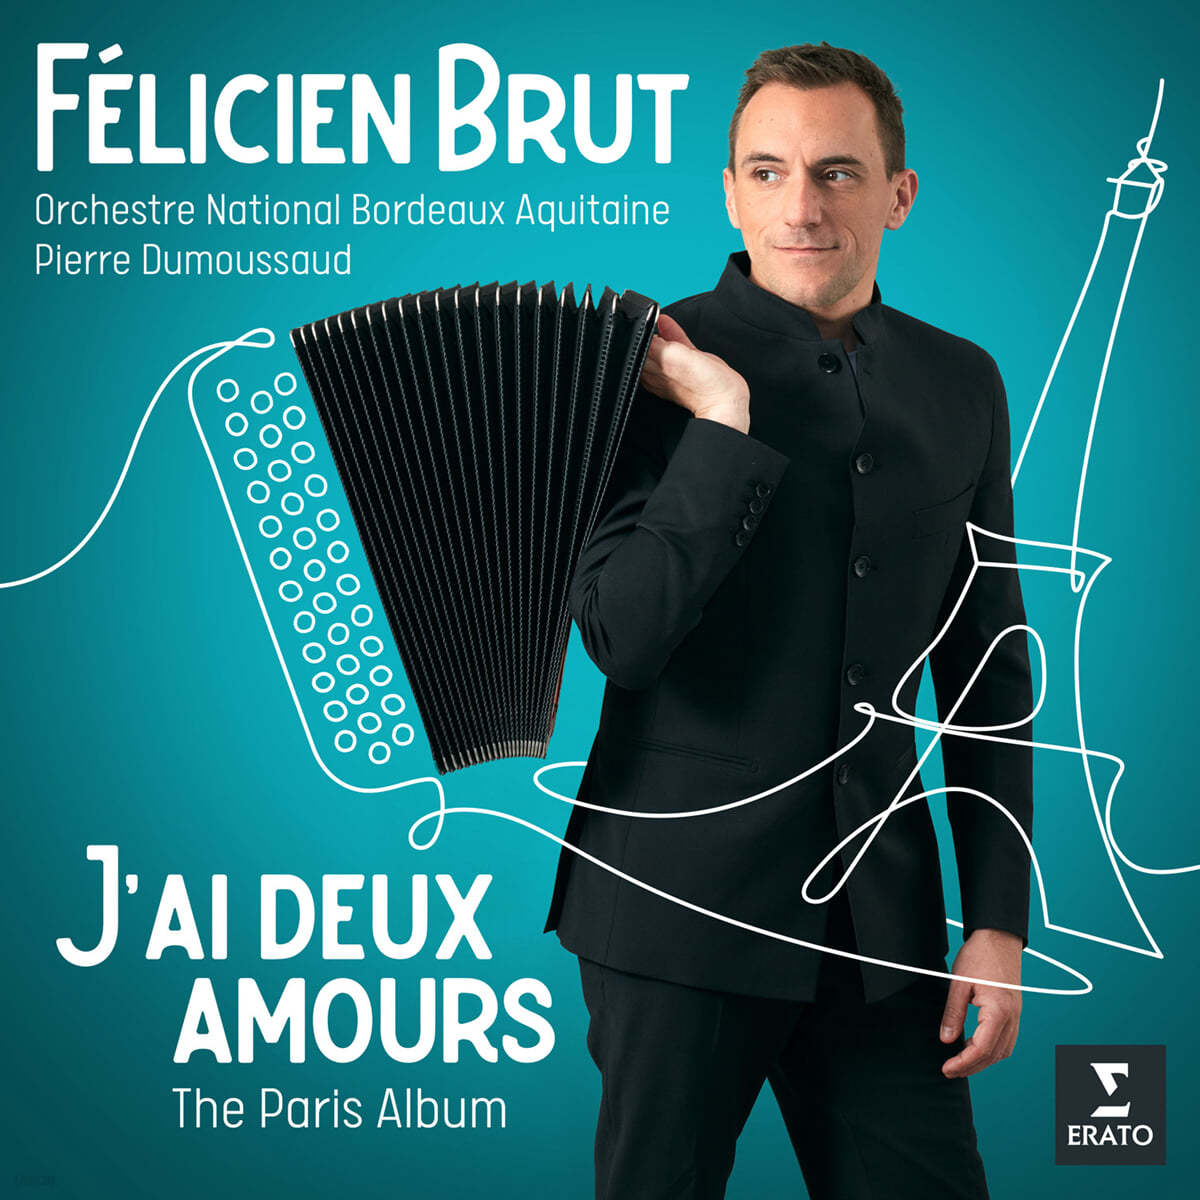 Felicien Brut 펠리시앙 브루트 아코디언 연주집 (J' Ai Deux Amours - The Paris Albums)